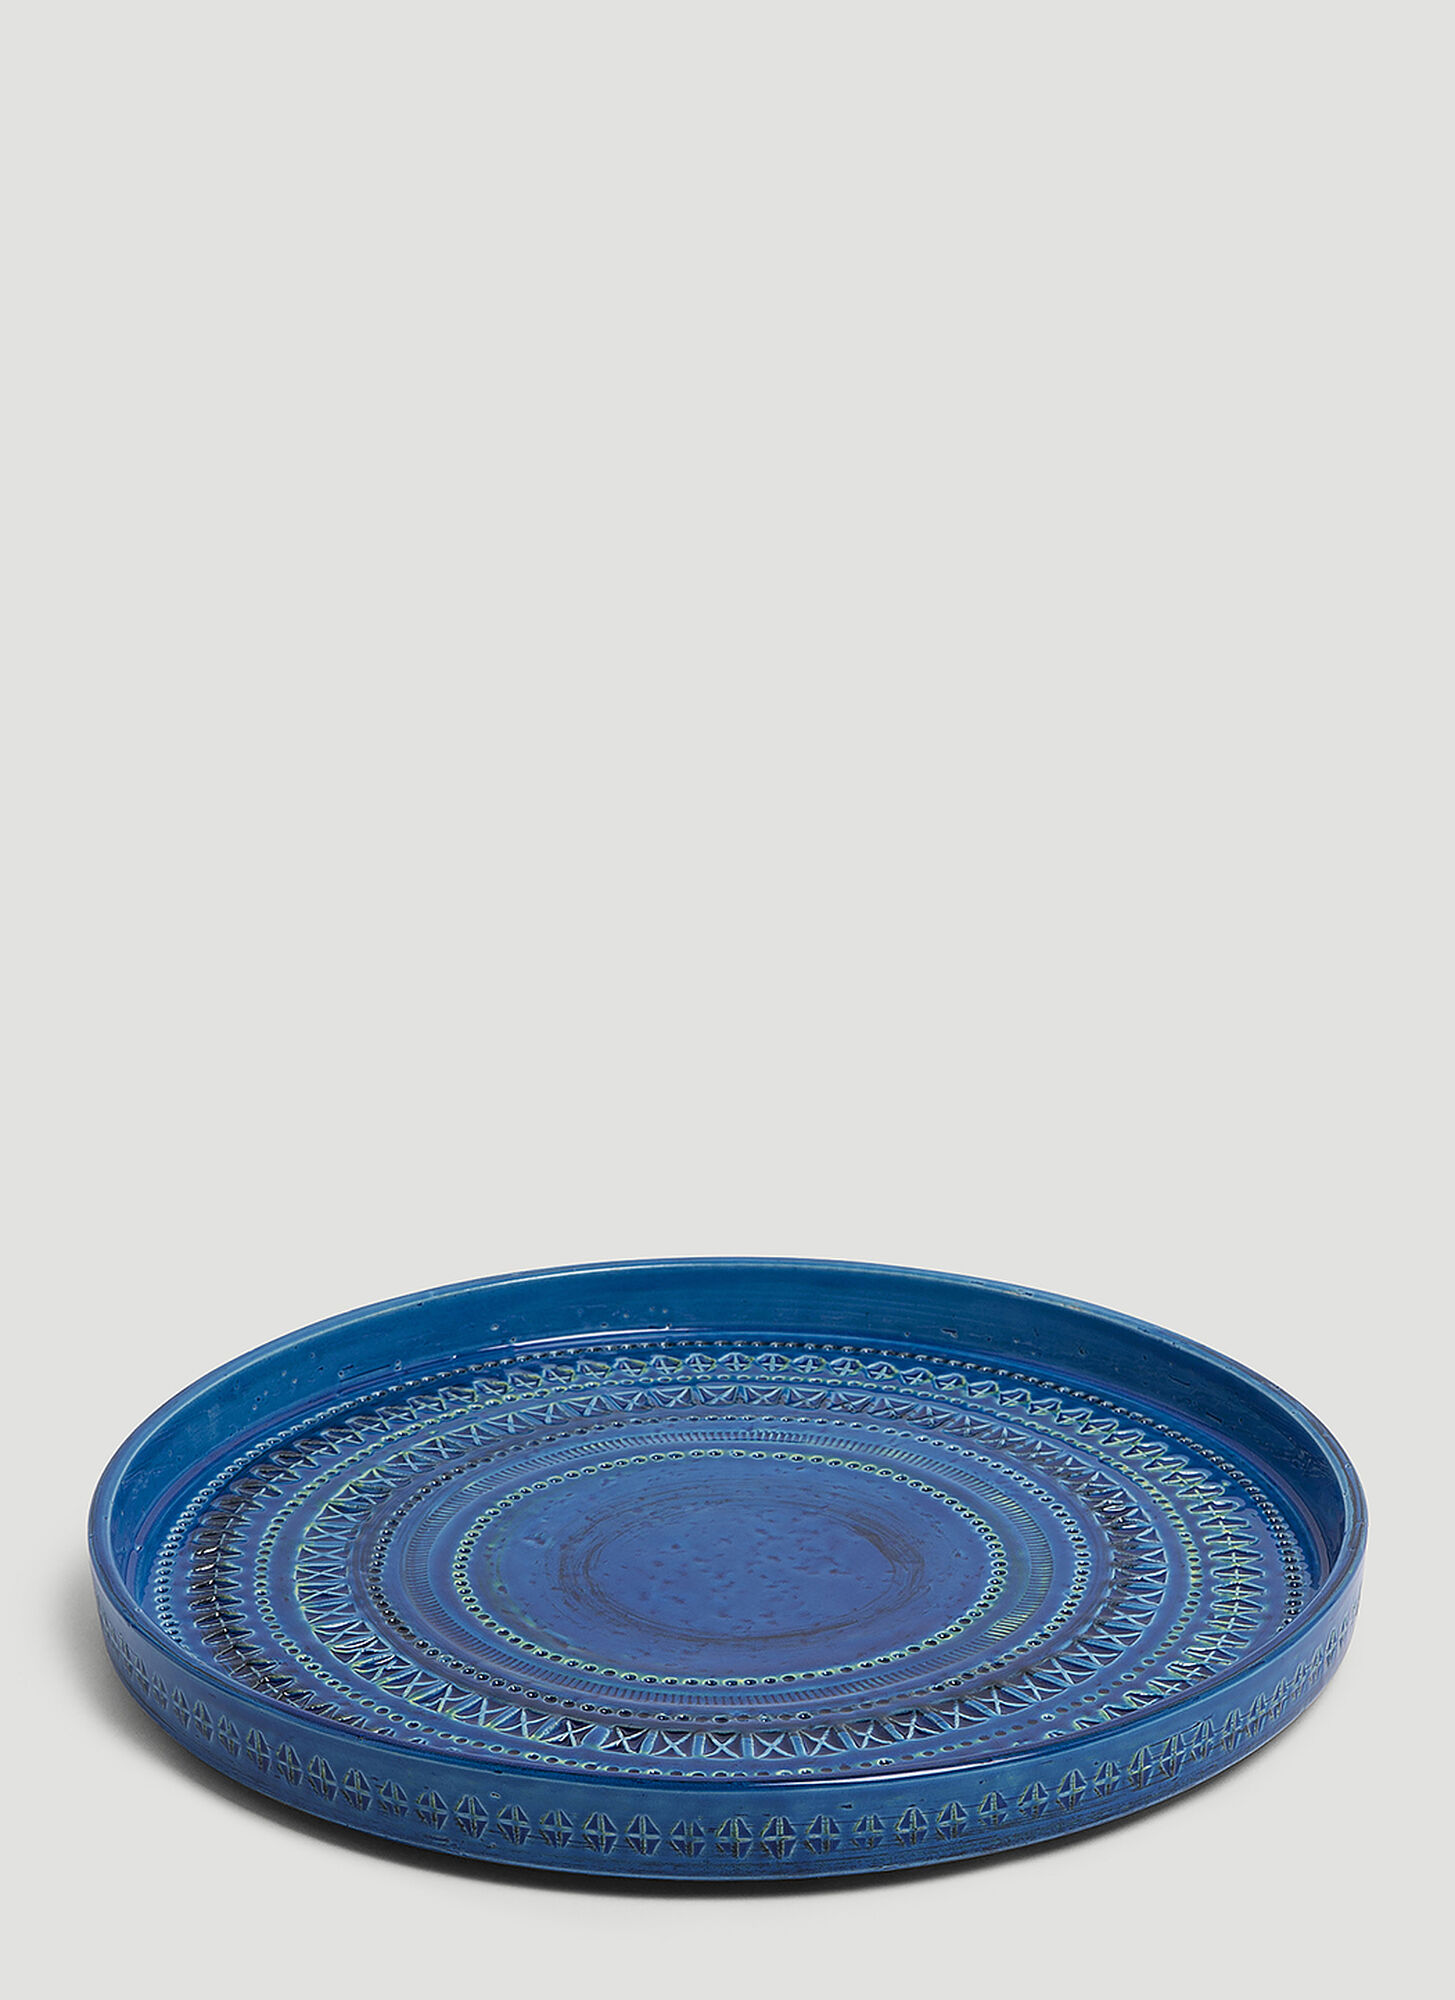 Bitossi Ceramiche Rimini Centrepiece In Blue